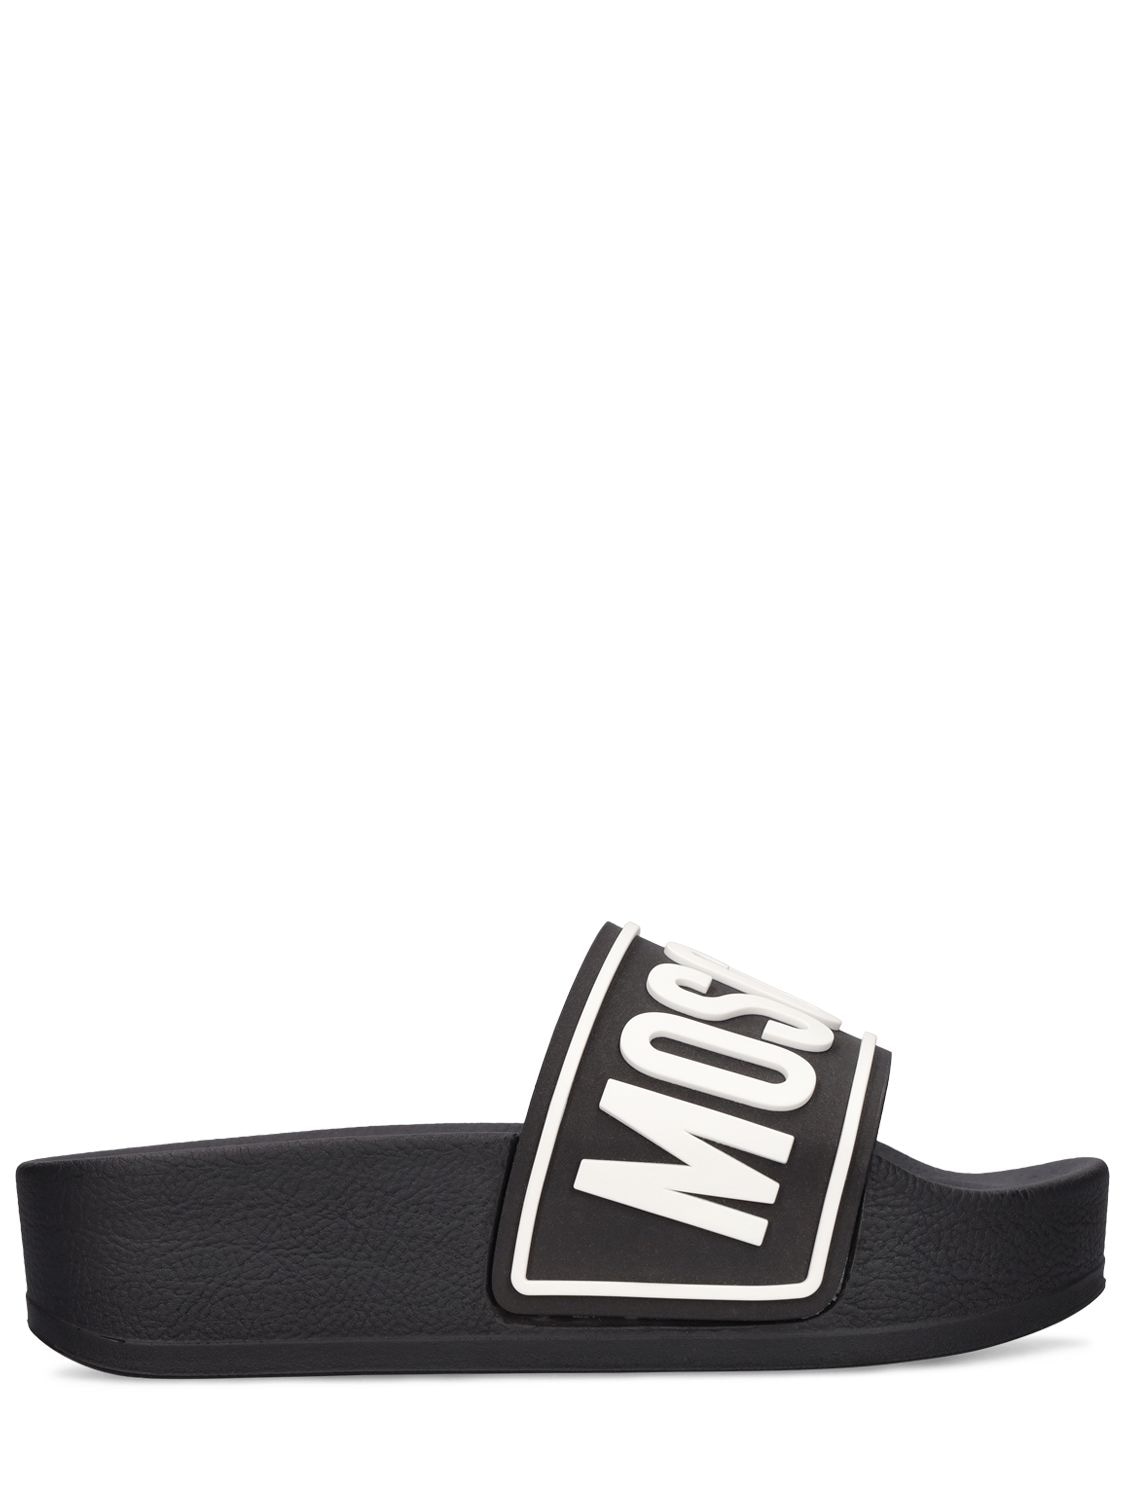 Moschino 50mm Logo Tpu Pool Slide Sandals In Black